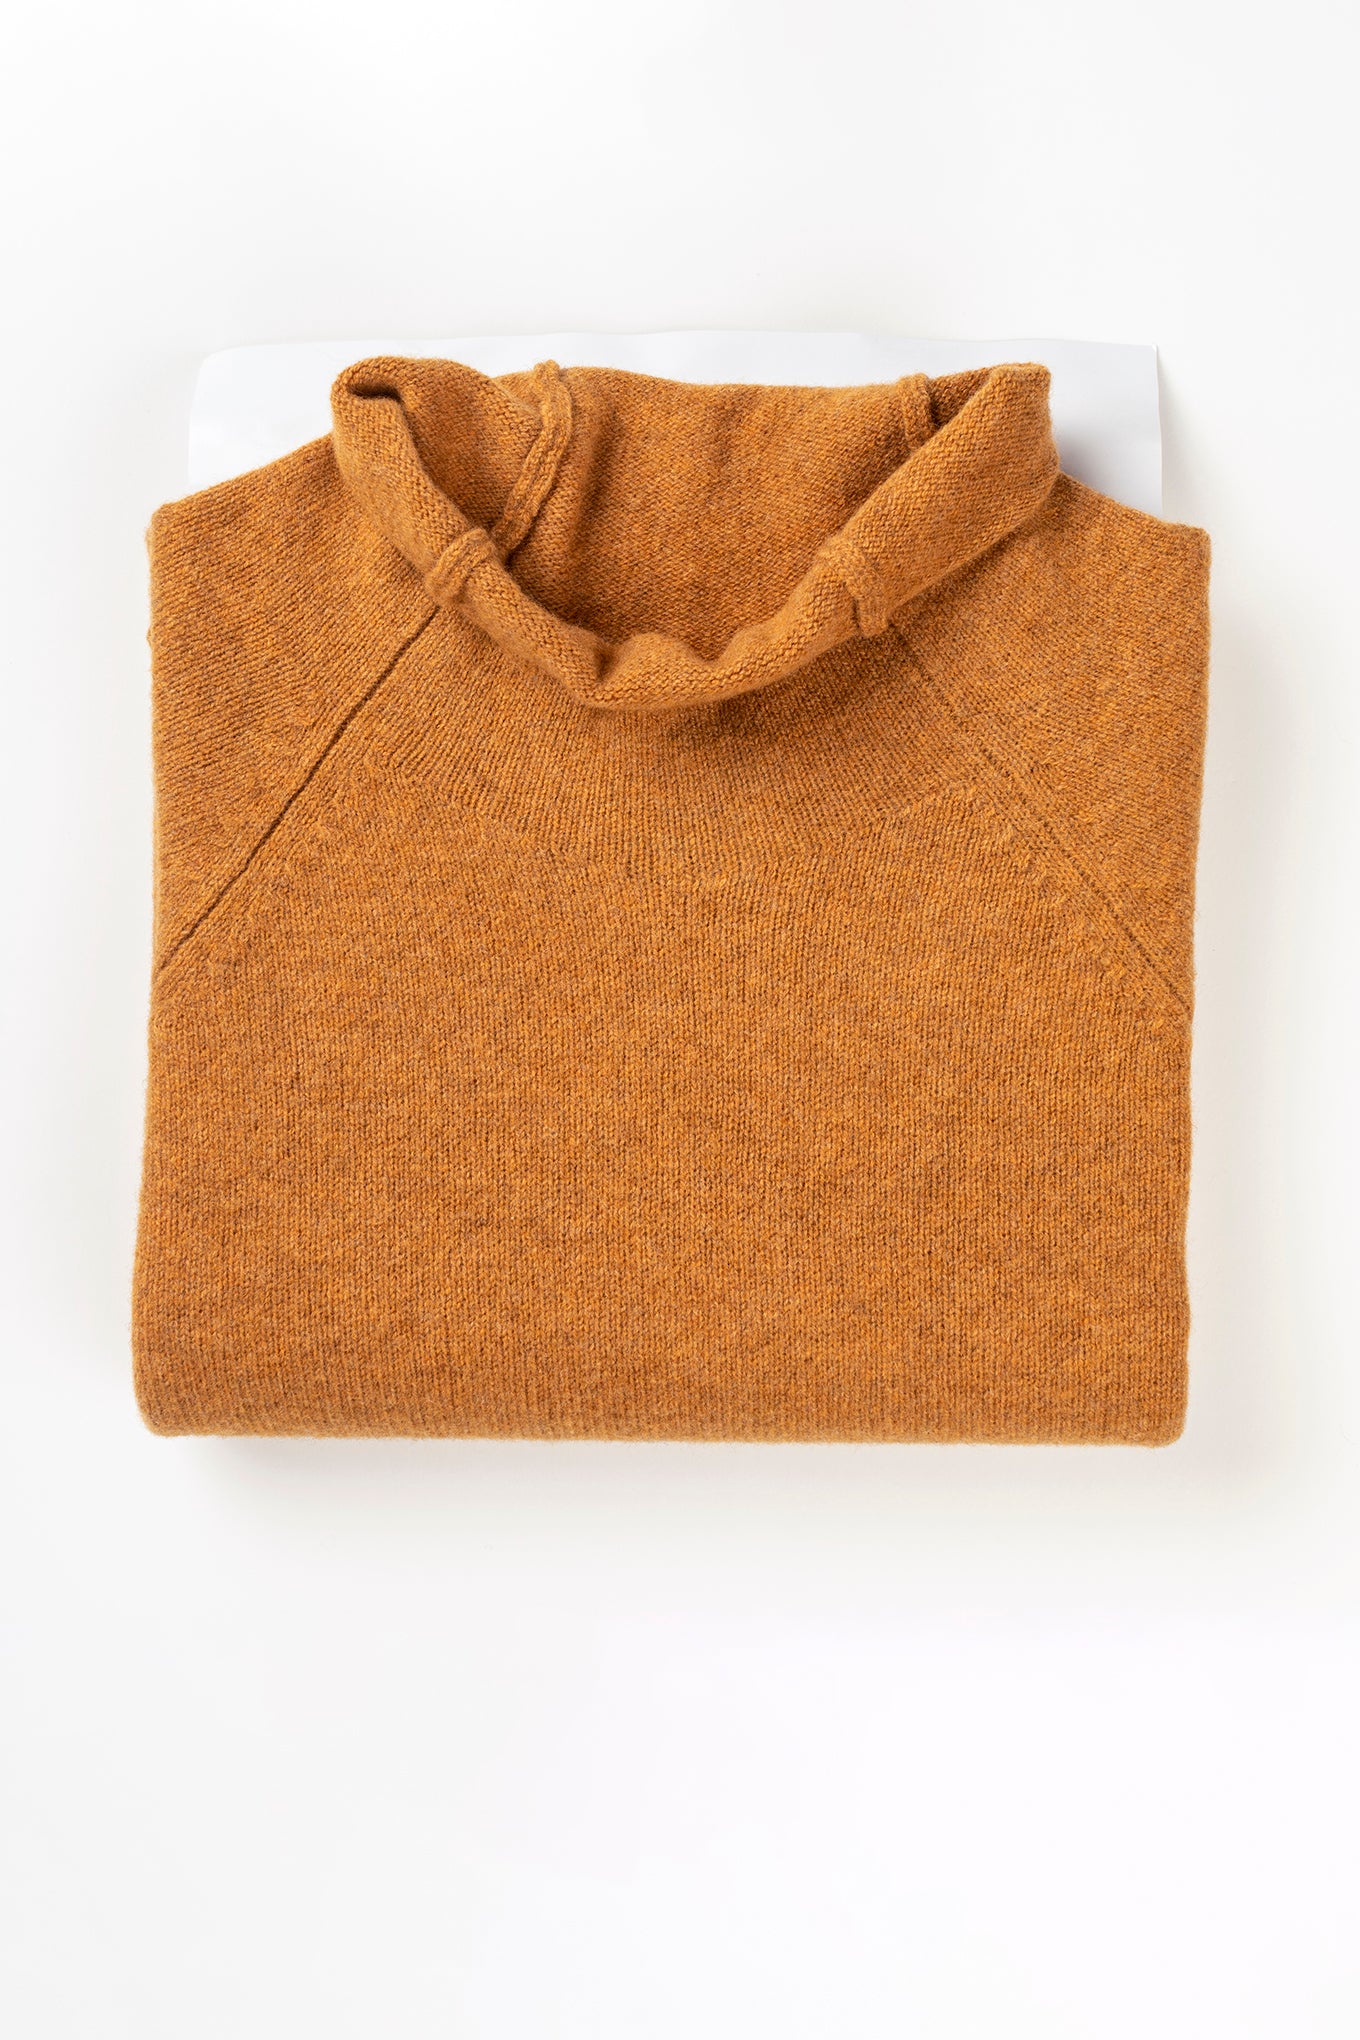 Corry merino wool raglan sweater in Gazelle, mustard yellow.